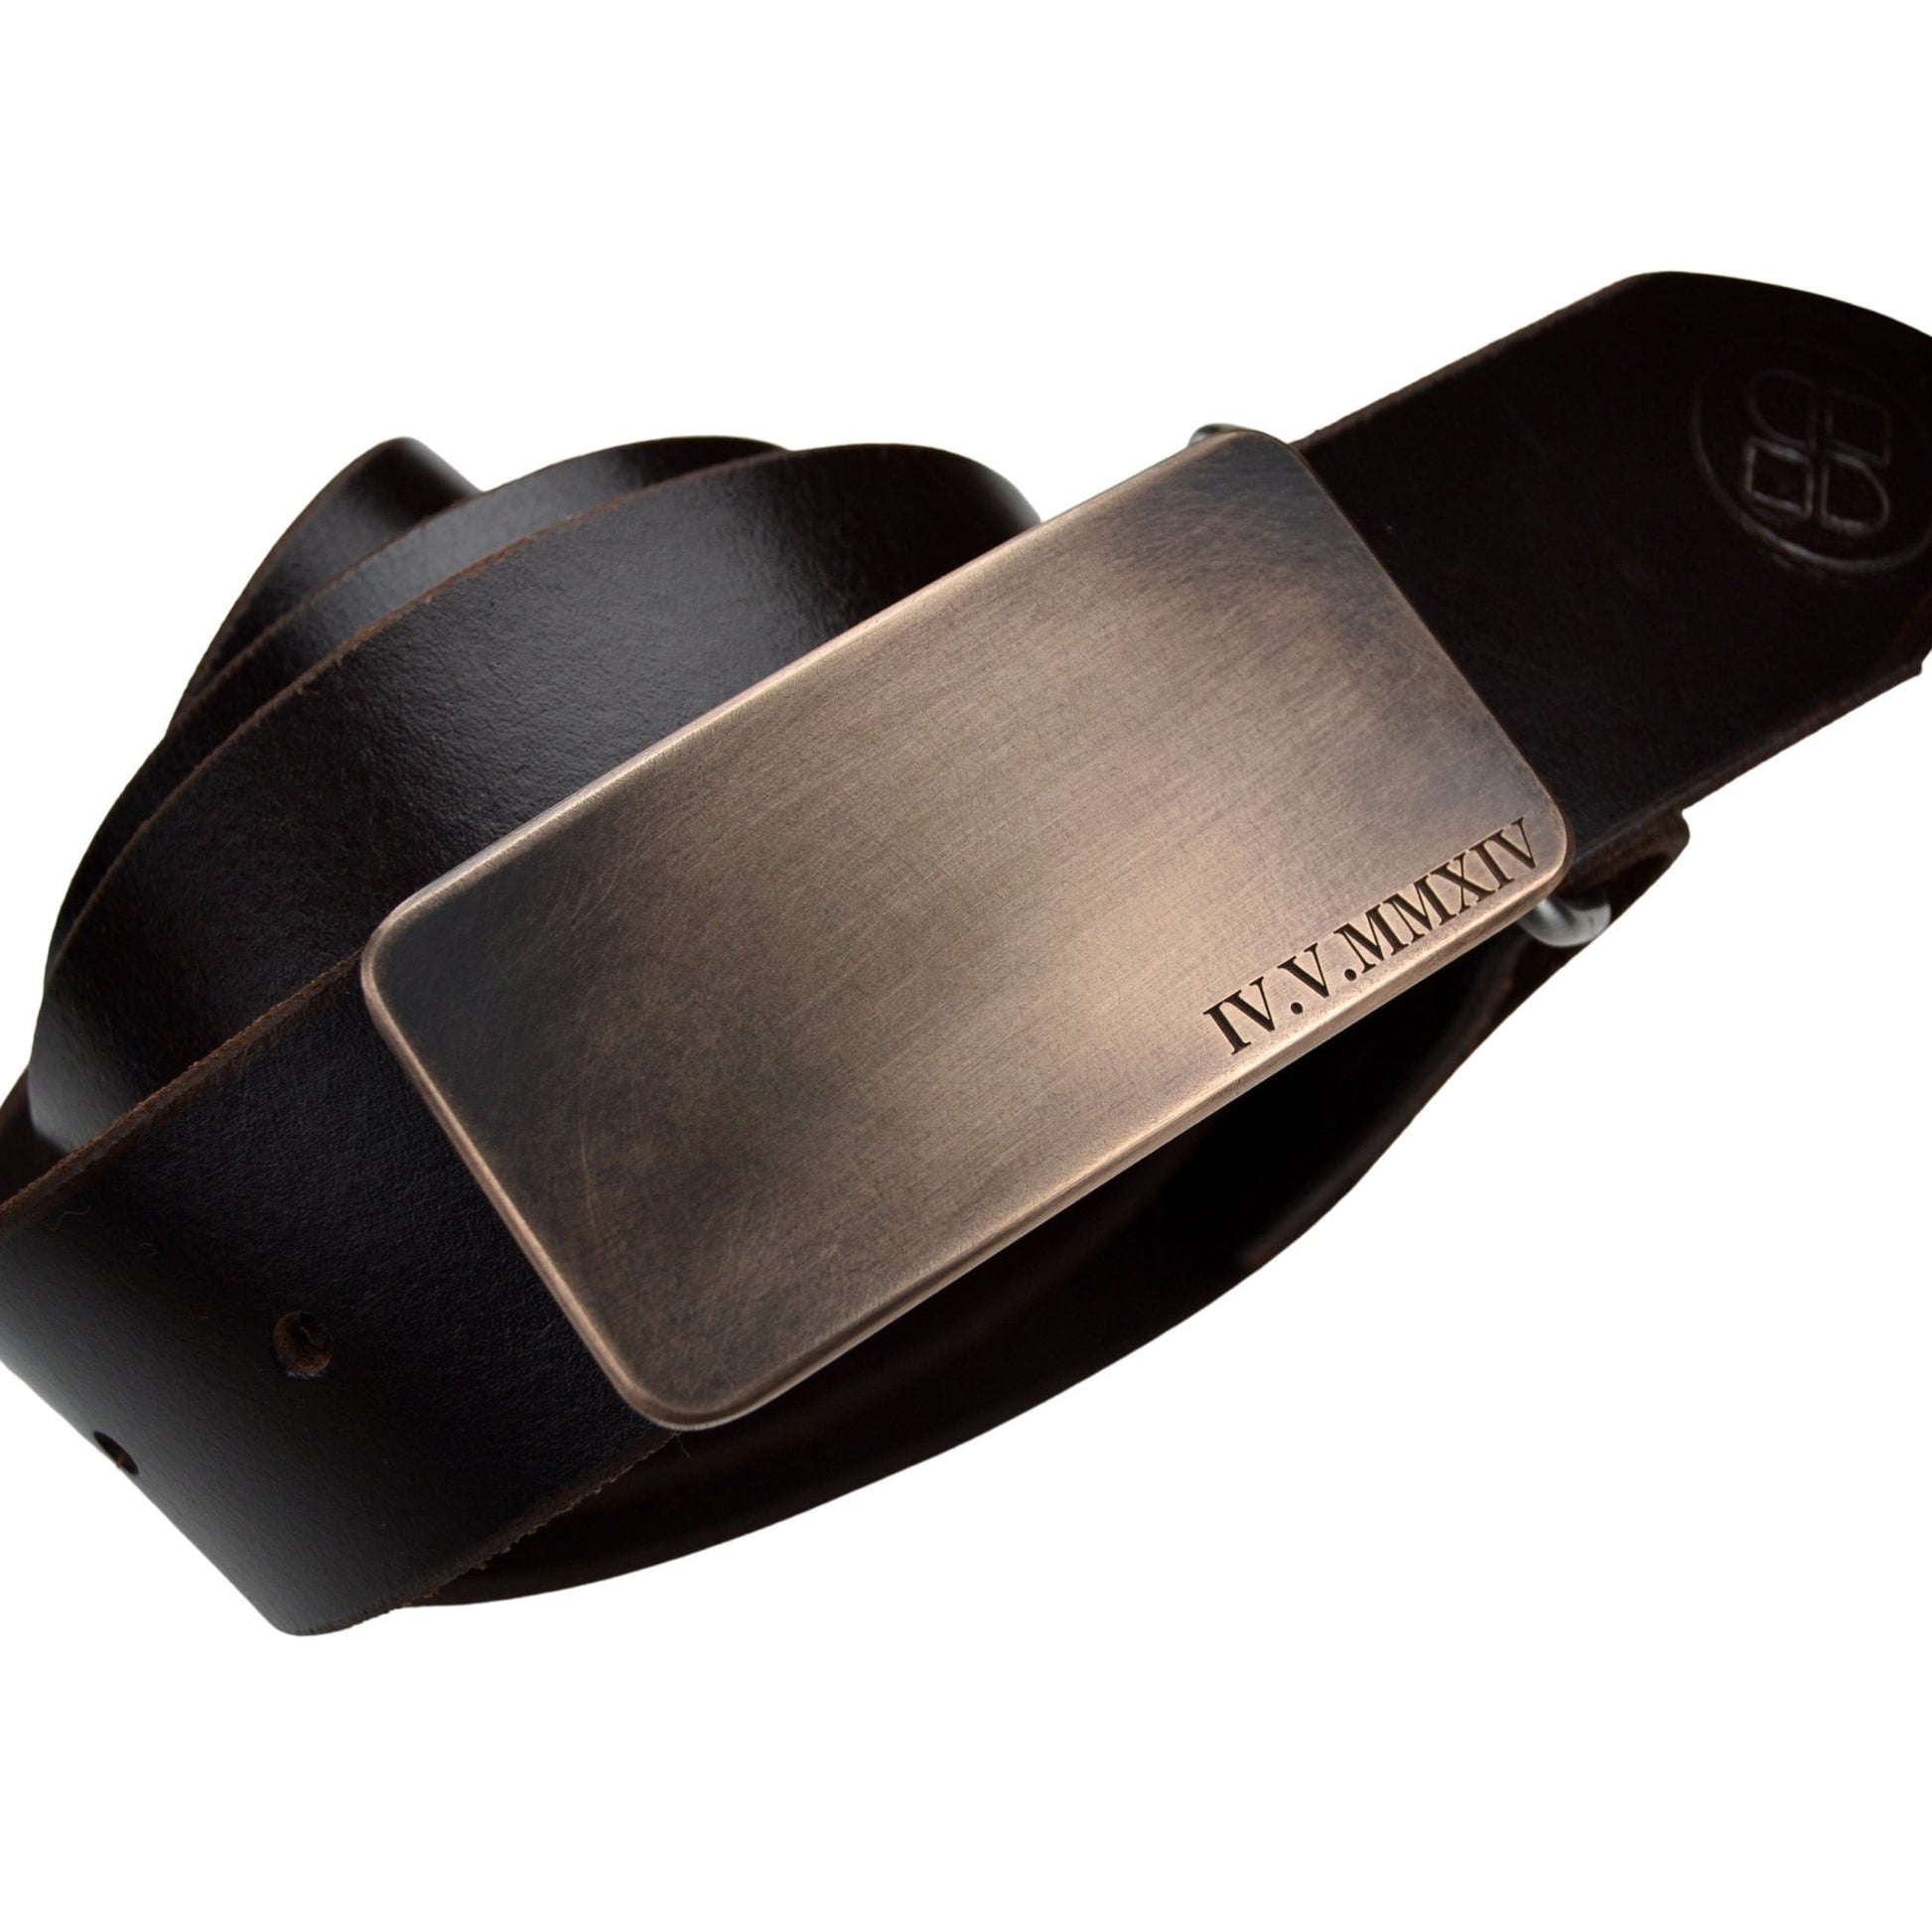 Bronze anniversary gift for husband, personalized bronze belt buckle, 8th anniversary gift for husband, 19th anniversary belt buckle